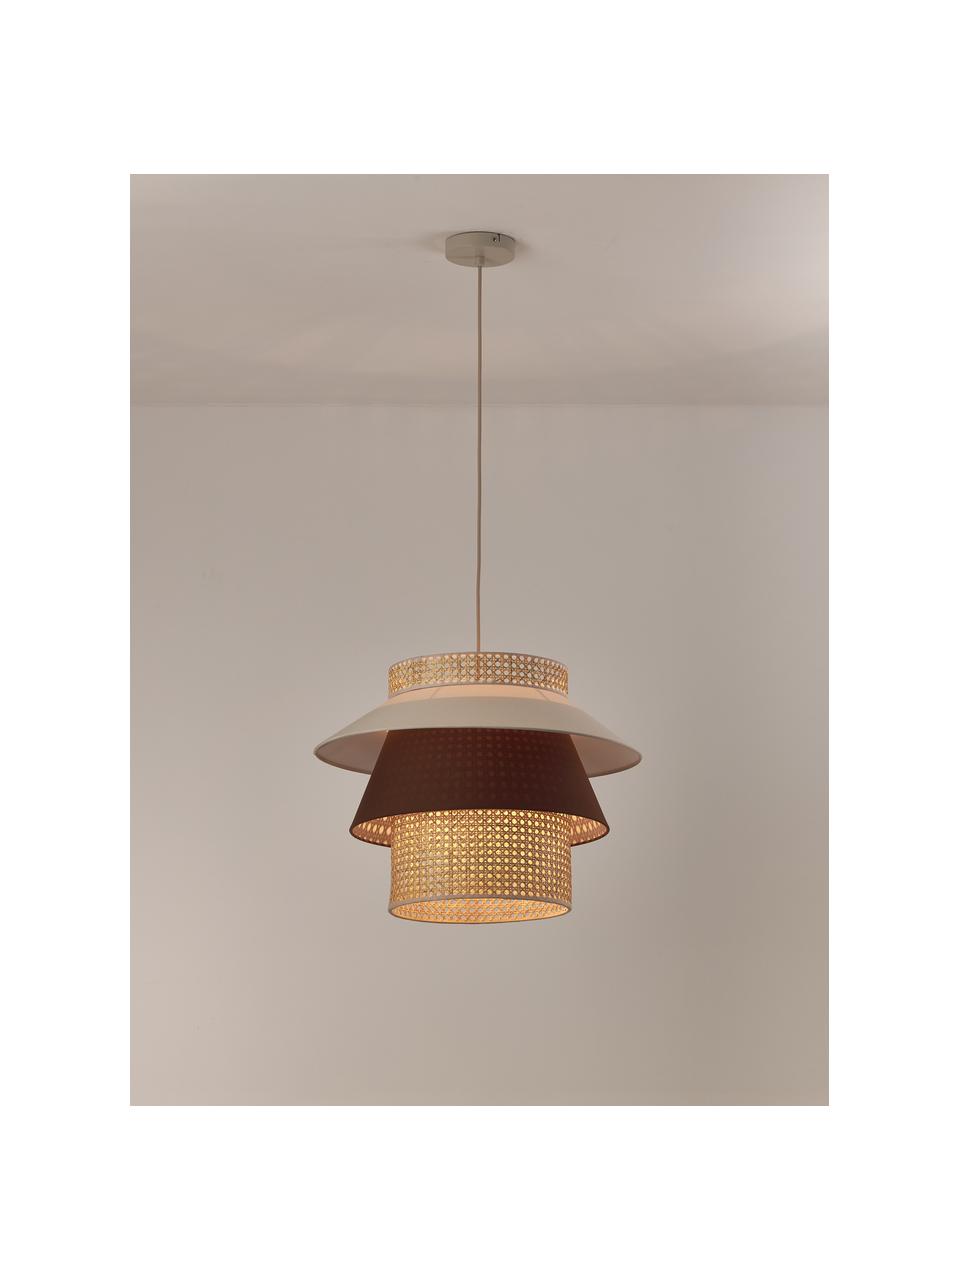 Grote hanglamp Klea van Weens vlechtwerk, Lampenkap: bamboe, textiel, Lichtbeige, bruin, B 55 x H 42 cm